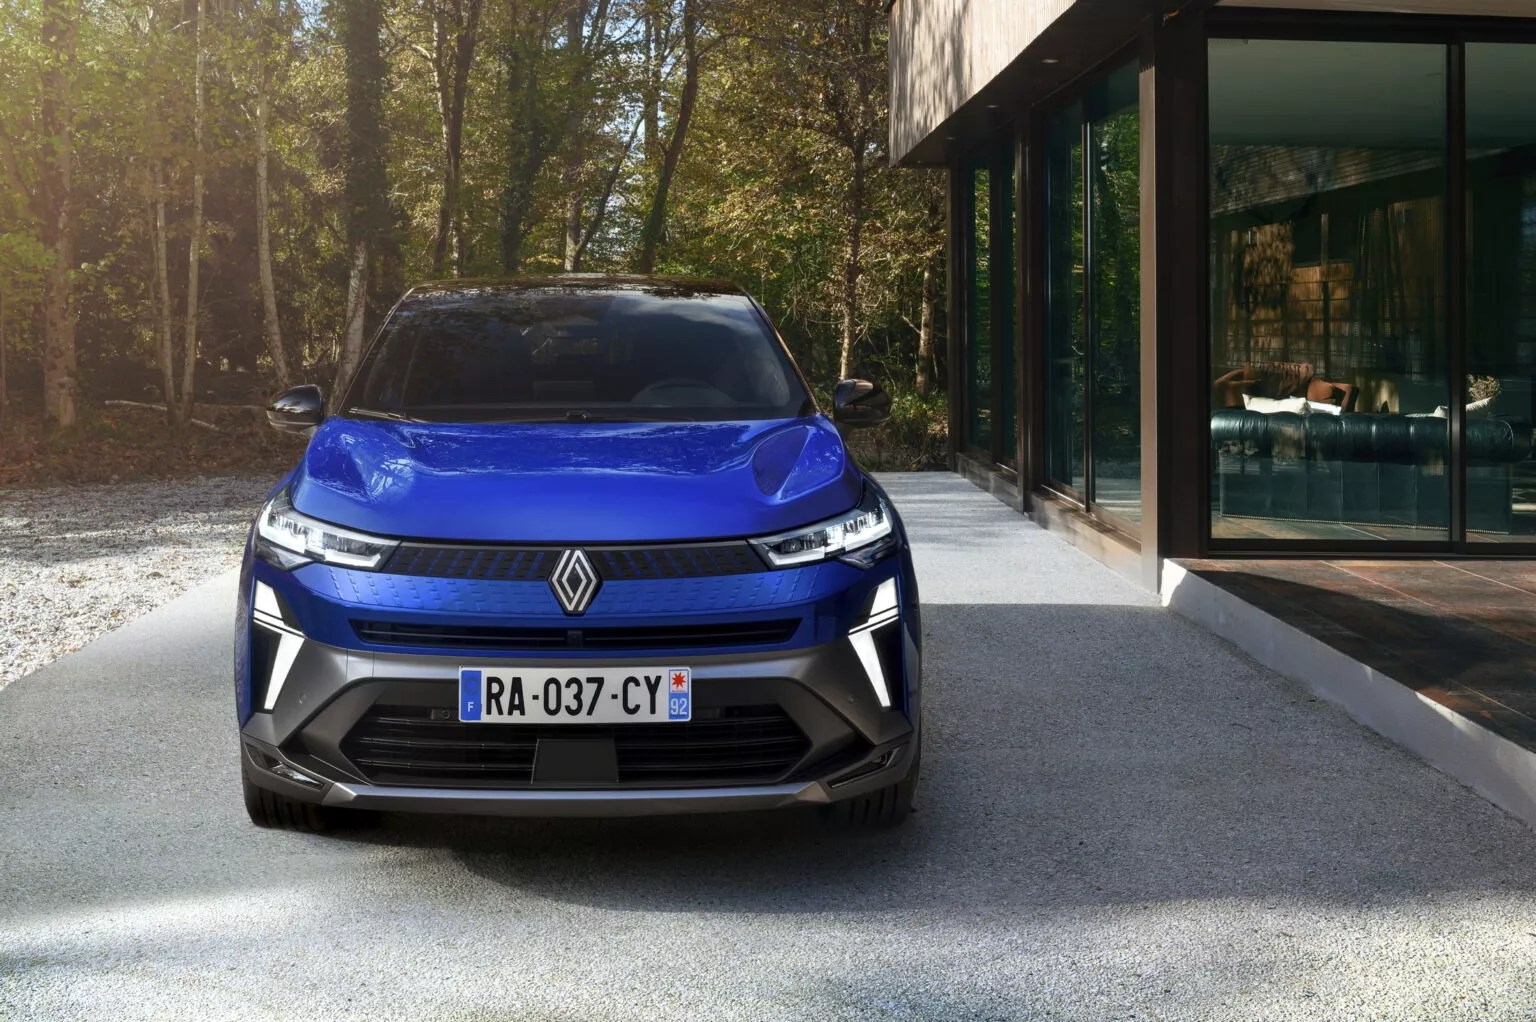 New-Renault-Captur-E-Tech-Hybrid-Esprit-Alpine-version_021-1536x1022